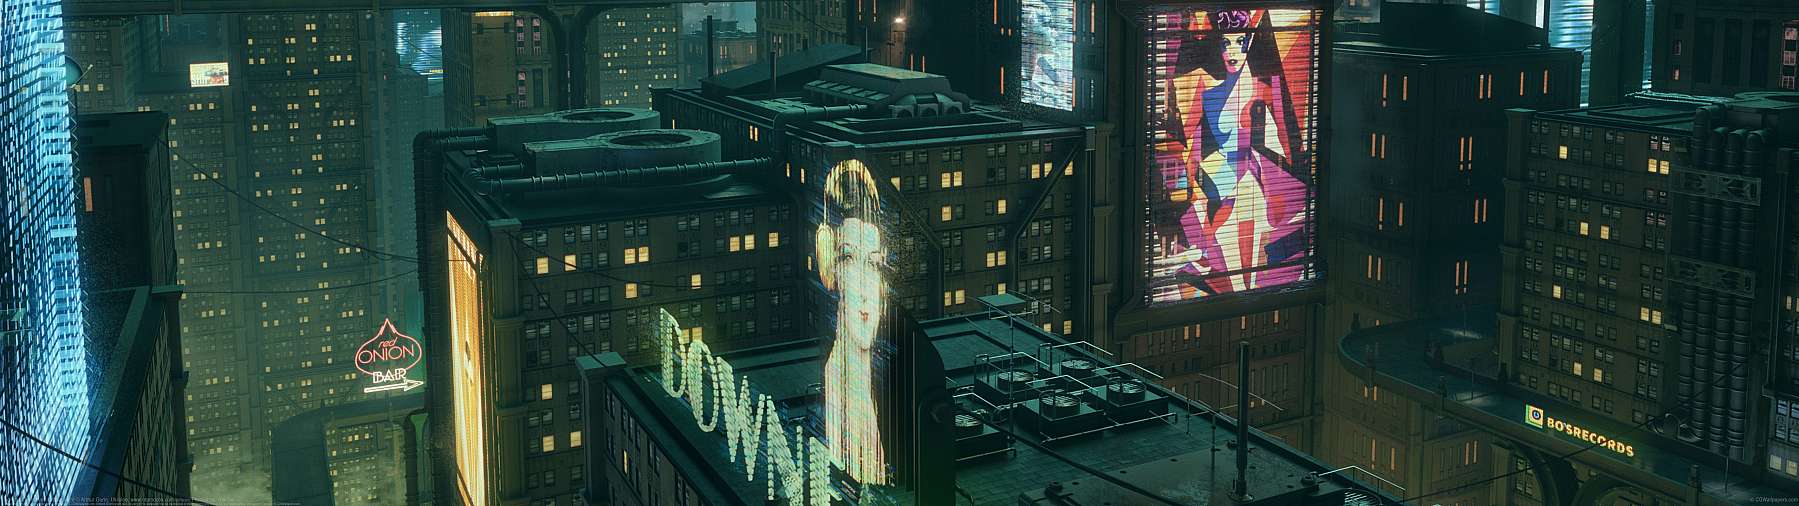 Artificial Detective - City at night ultra ancha fondo de escritorio